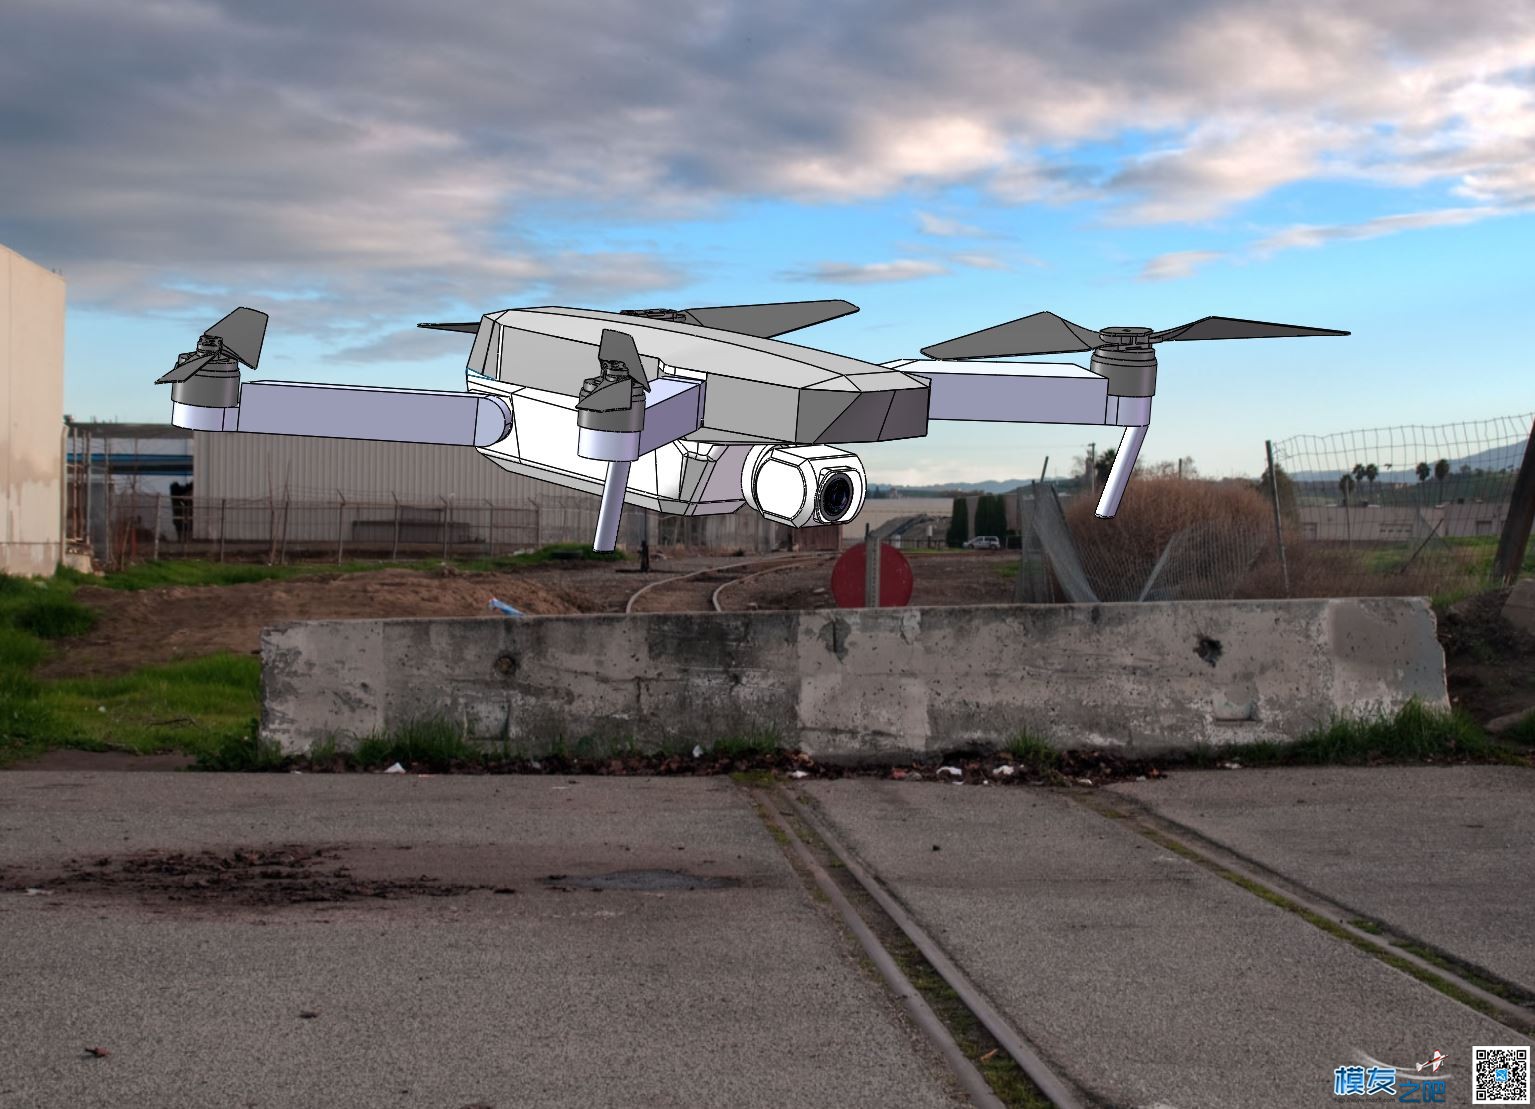 自制大疆mavic折叠无人机 全新设计 慢更 无人机,穿越机,电池,云台,图传 作者:zoney 7337 